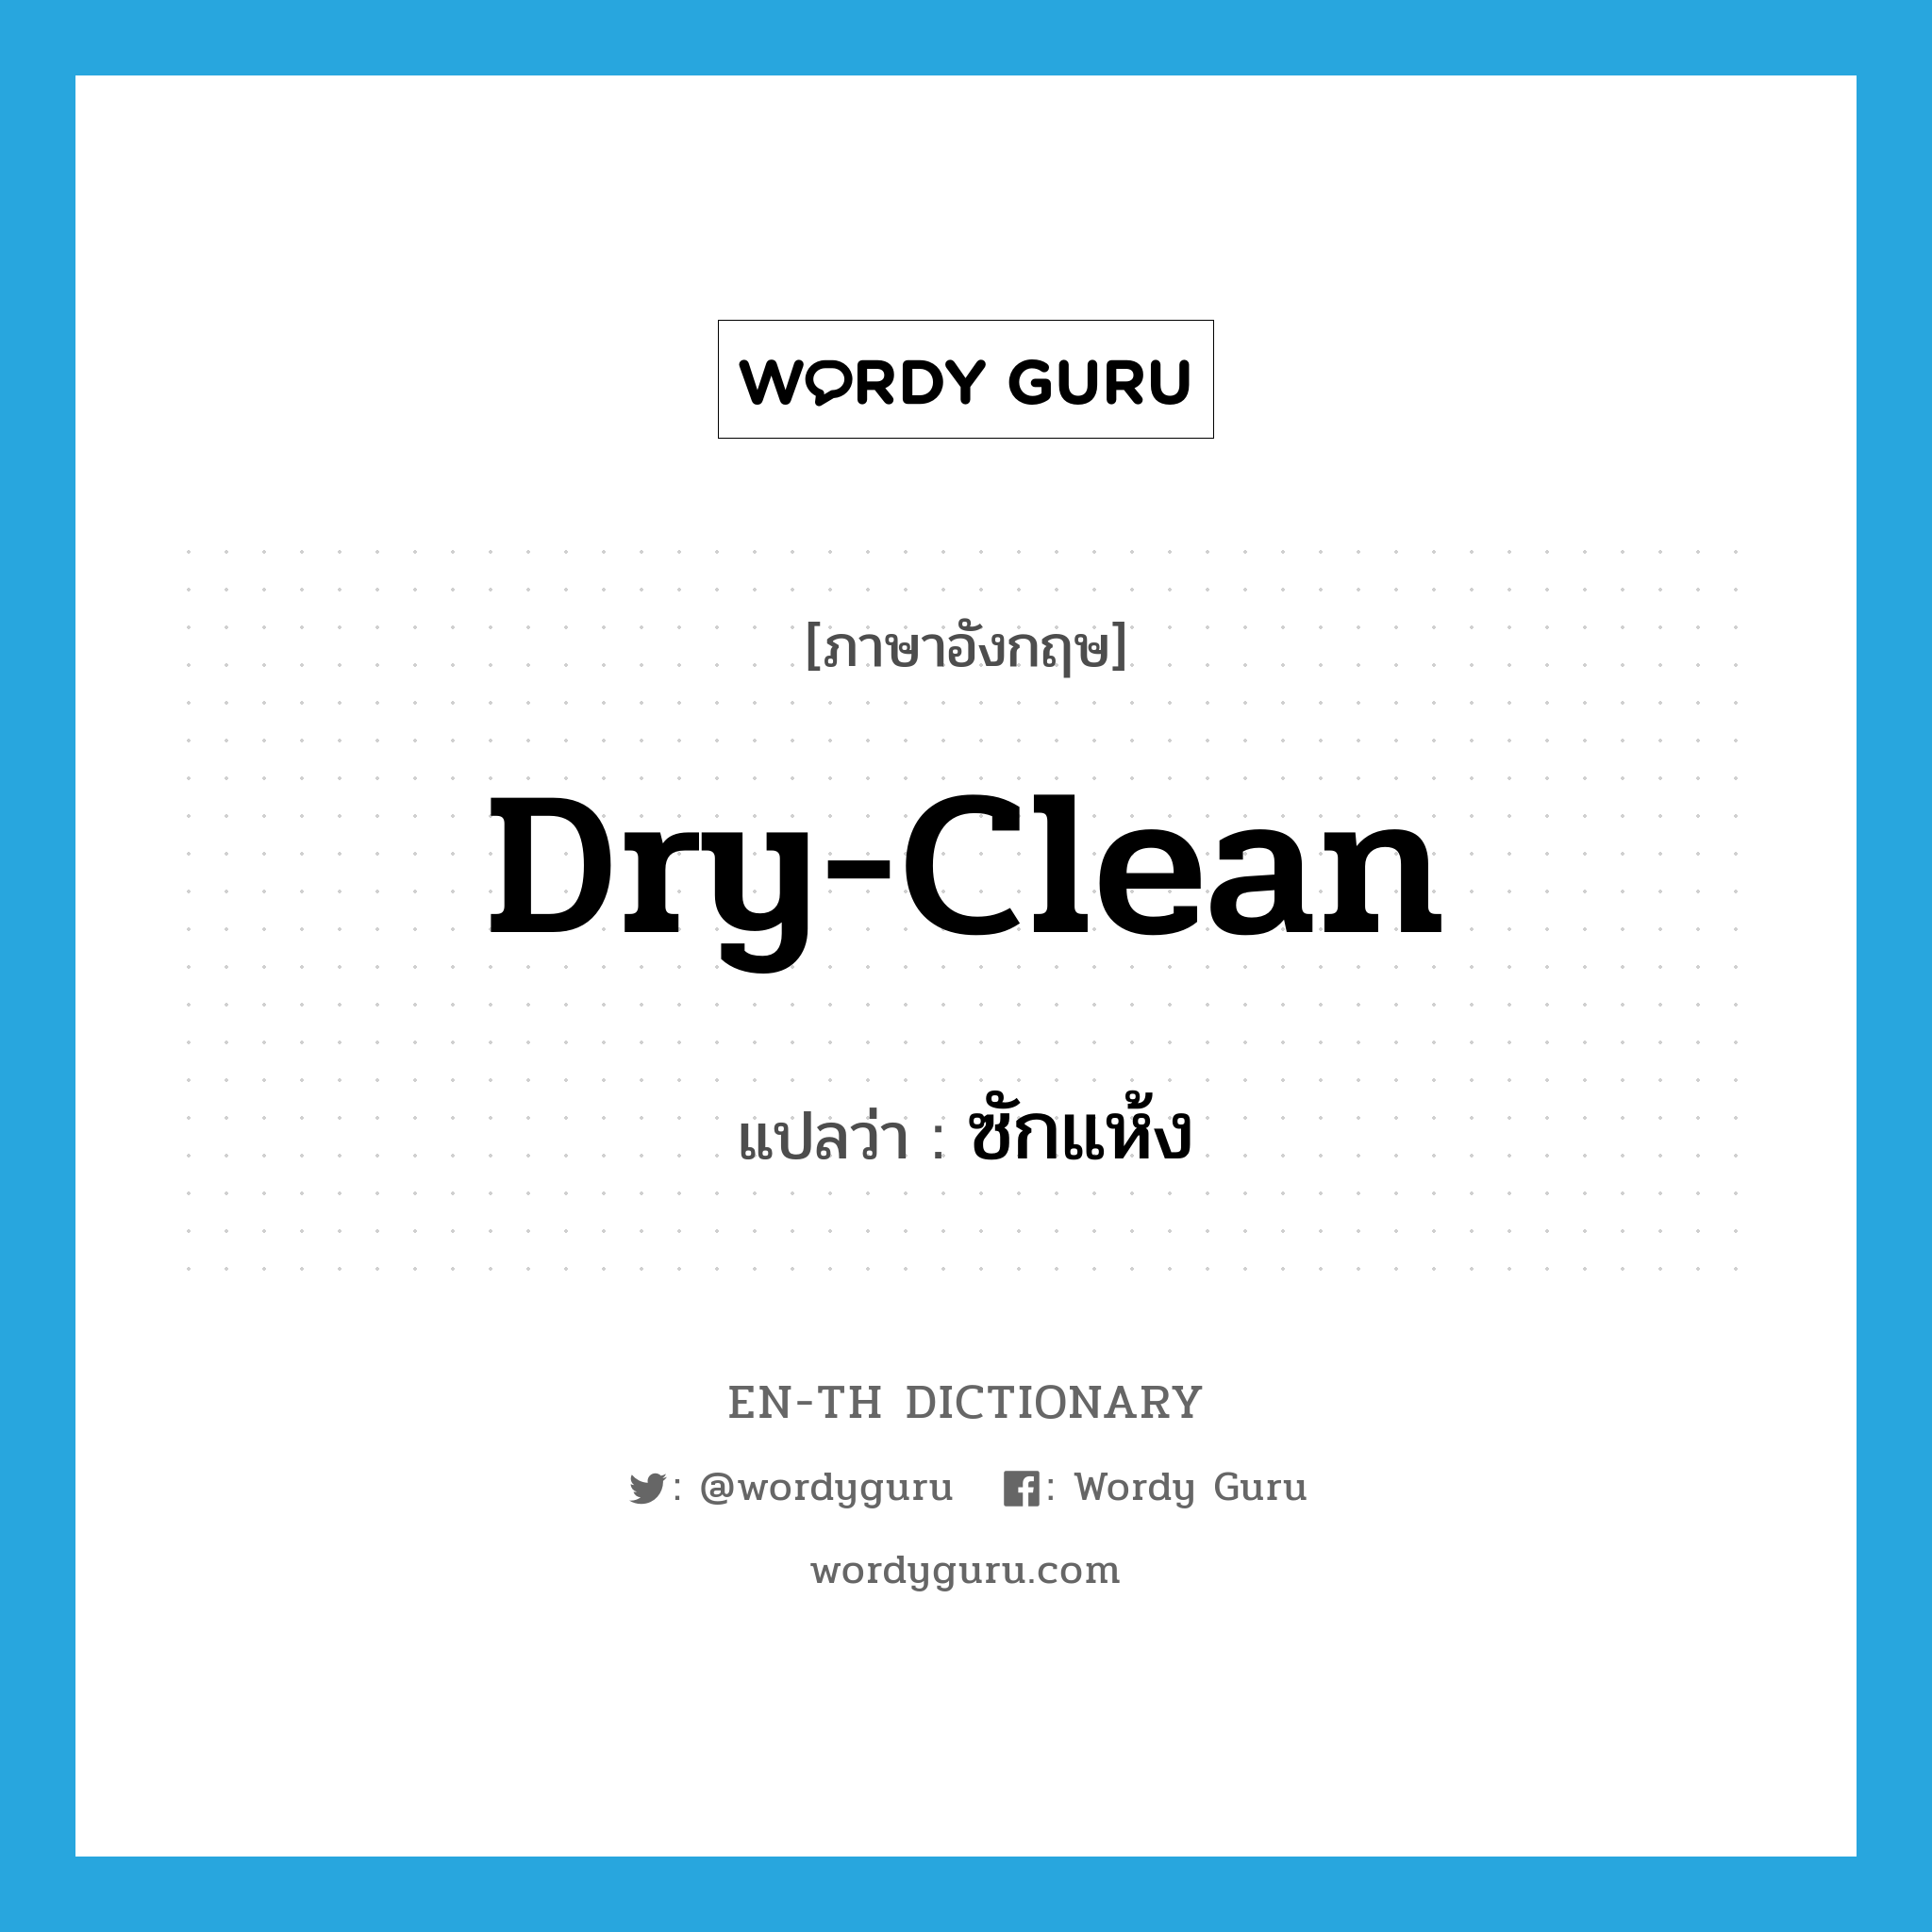 dry-clean แปลว่า?, คำศัพท์ภาษาอังกฤษ dry-clean แปลว่า ซักแห้ง ประเภท VT หมวด VT